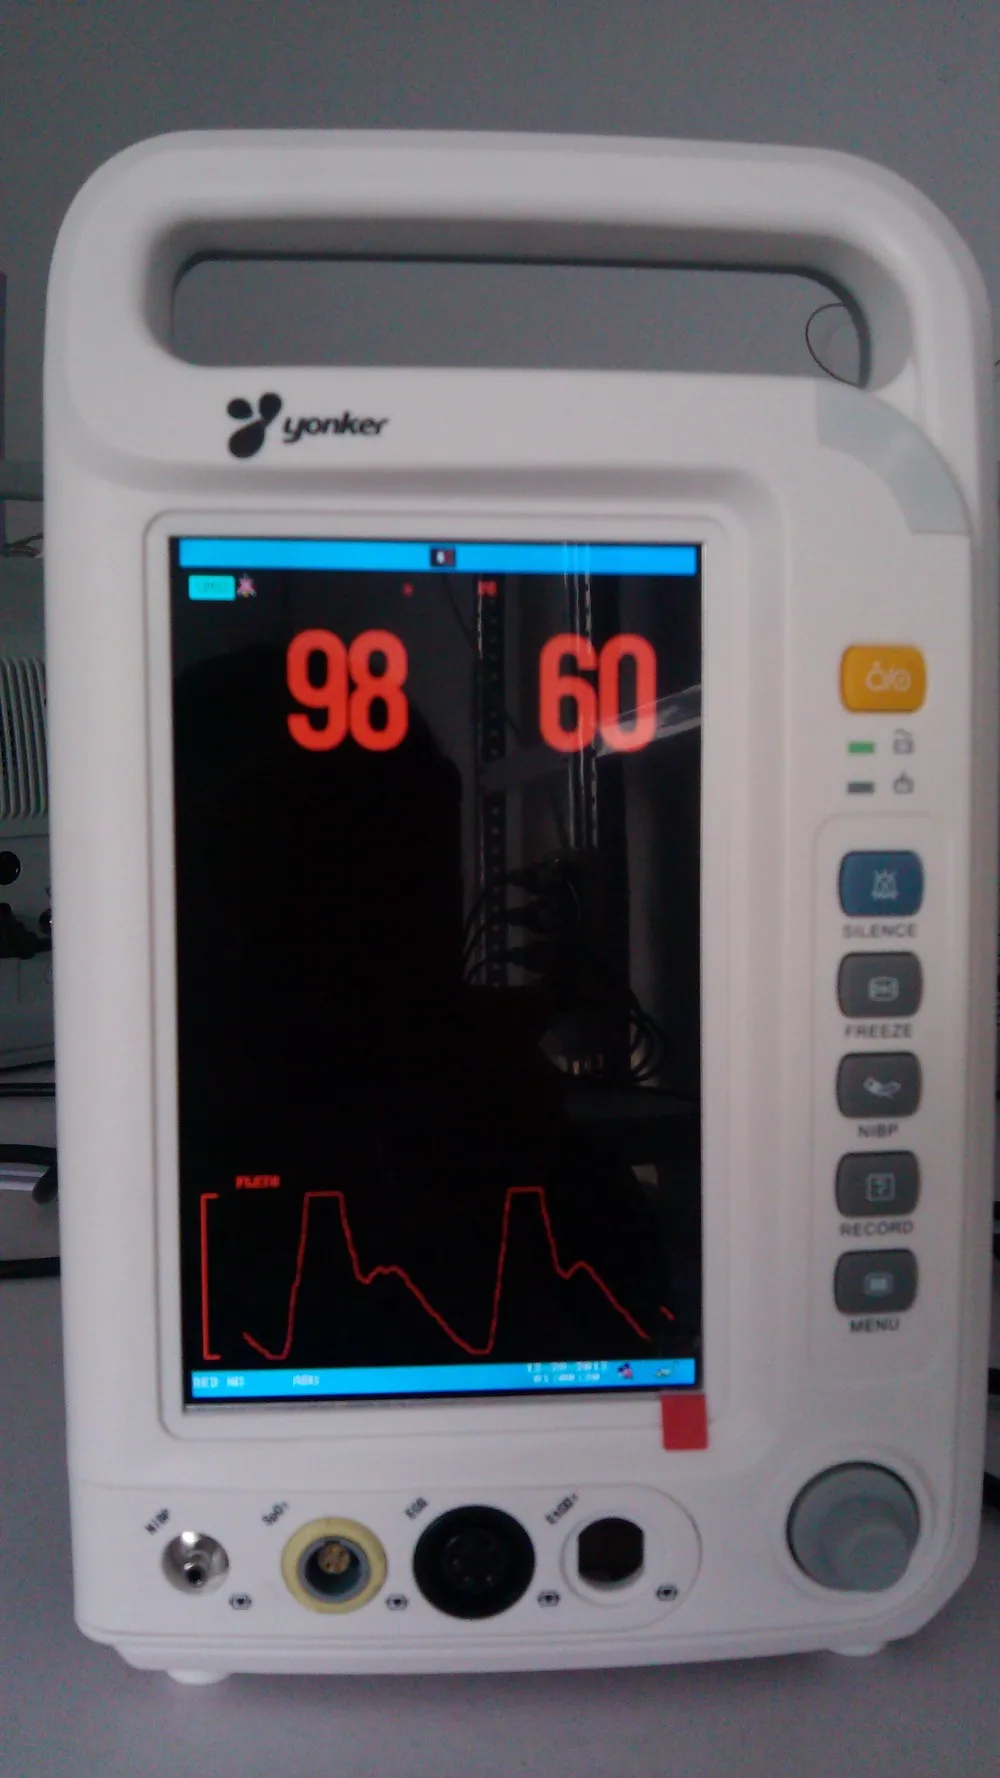 Multi параметр монитор пациента в отделении интенсивной терапии пульса артериального давления температура оксиметр здоровье и гигиена спецодежда медицинская оборудования YK8000A